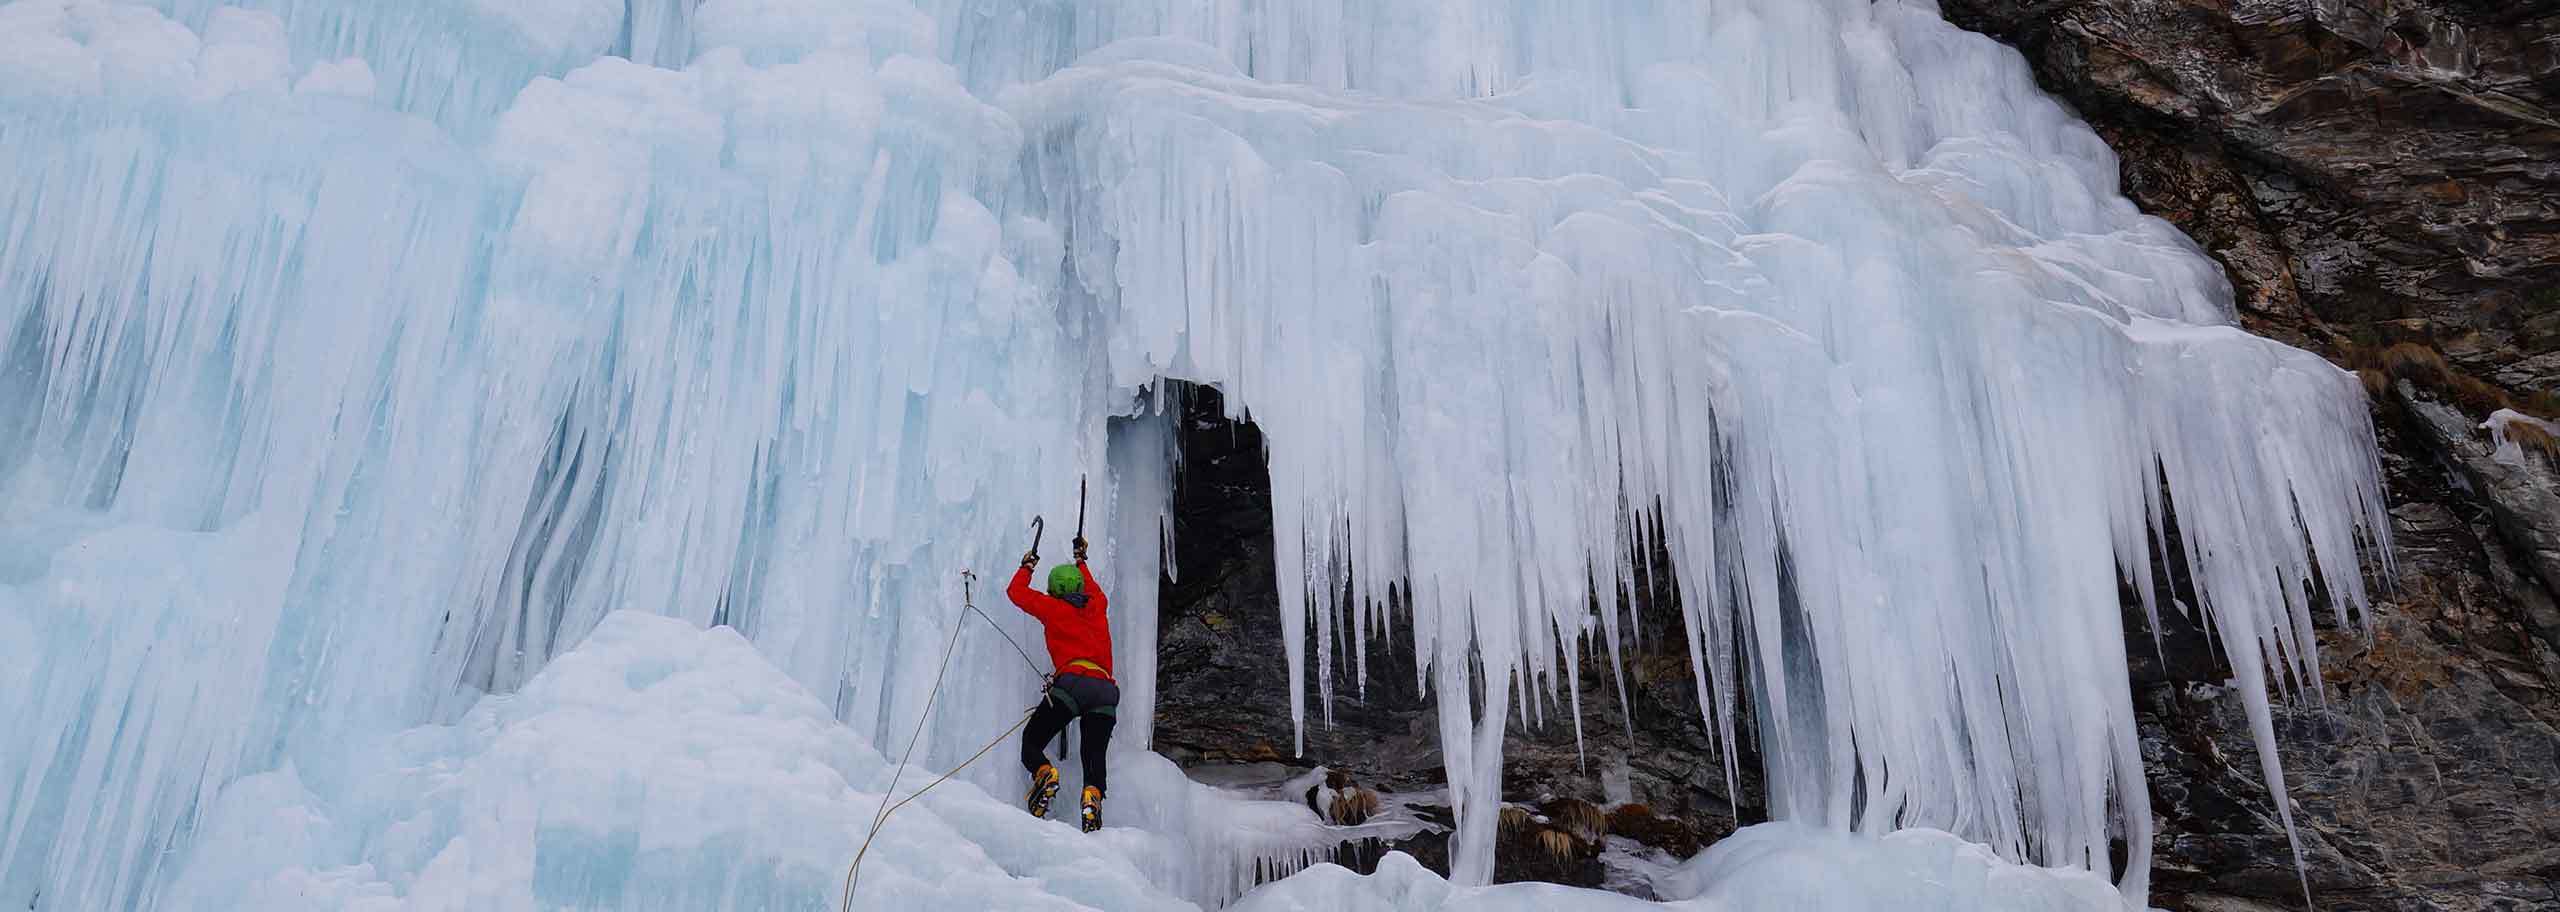 Ice Climbing in Valsavarenche, Valleile, Valnontey